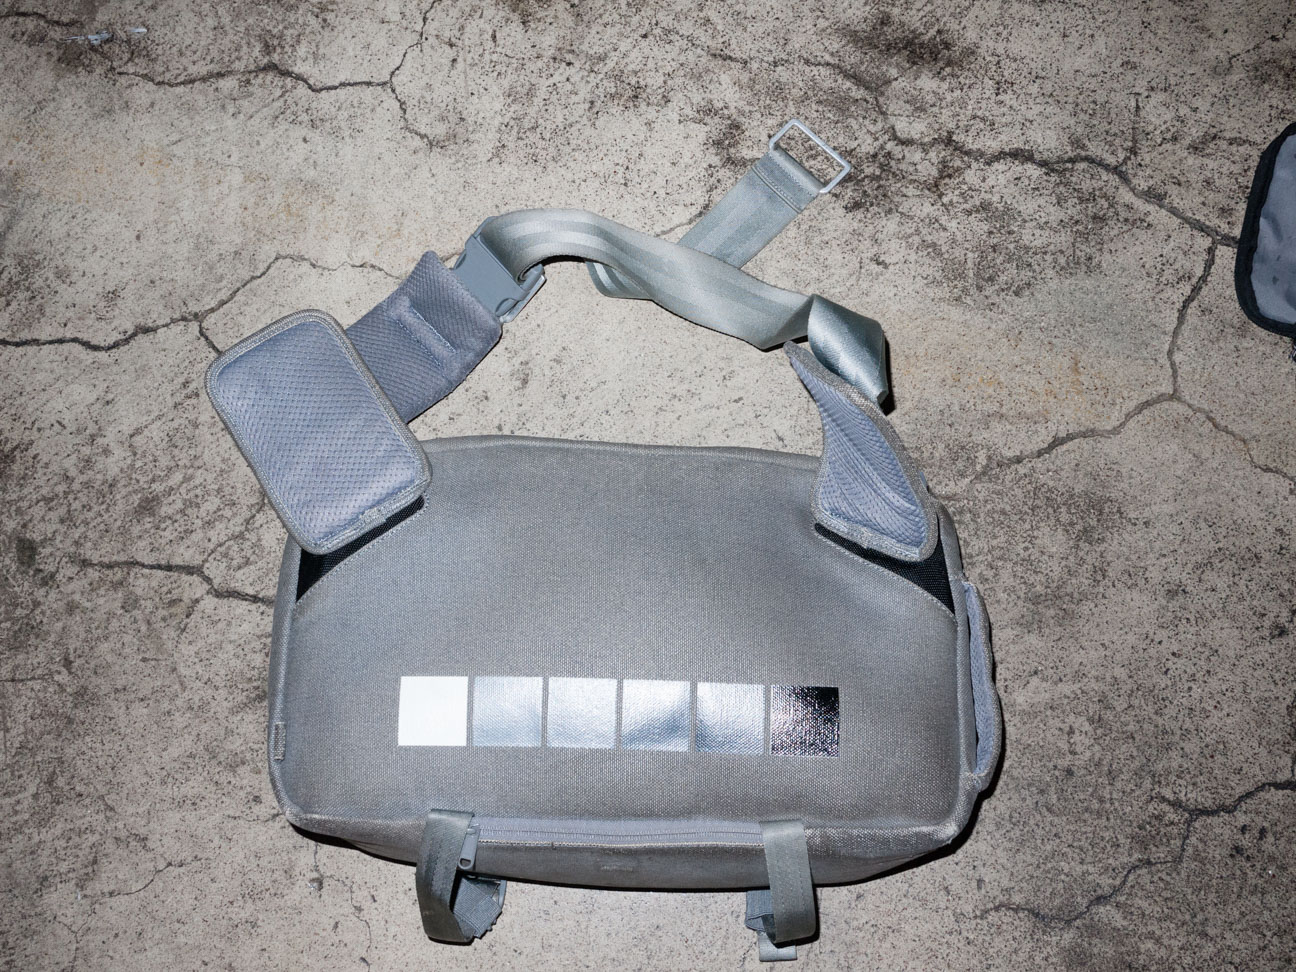 Ari InCase Travel Camera Bag